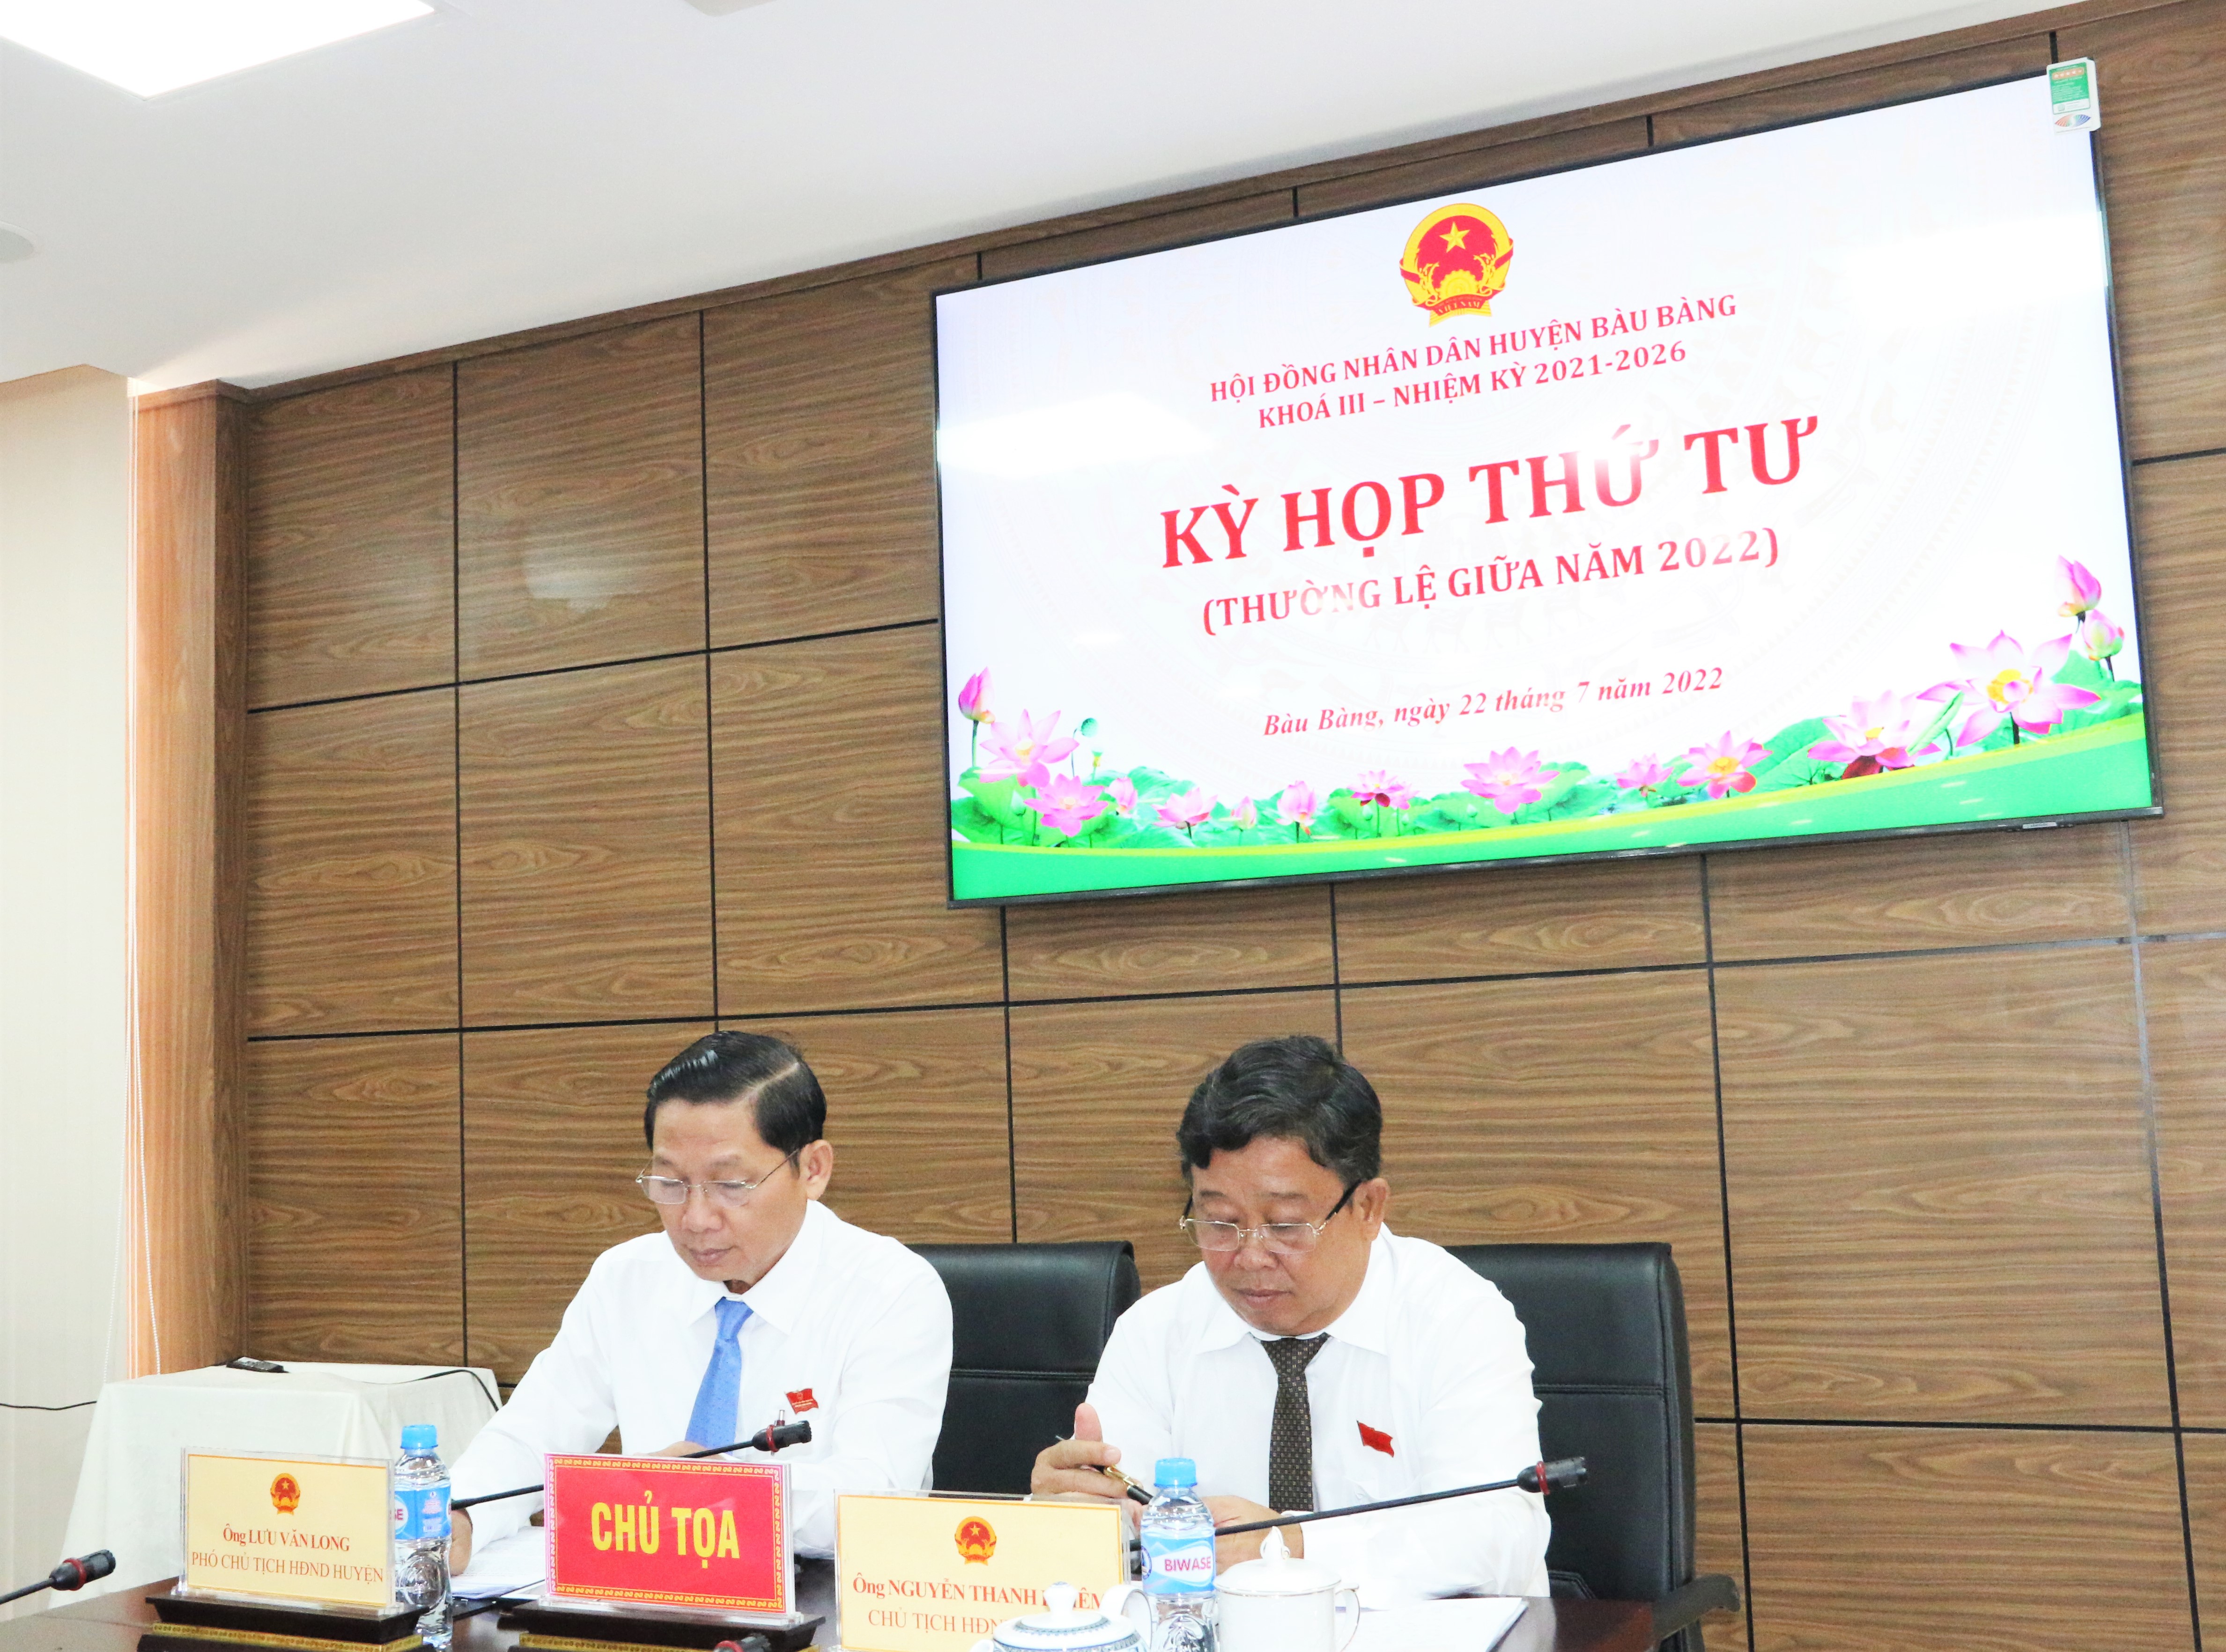 Bàu Bàng tổ chức tổ chức kỳ họp HĐND huyện lần thứ 4 (thường kỳ giữa năm 2022), khóa III, nhiệm kỳ 2021-2022